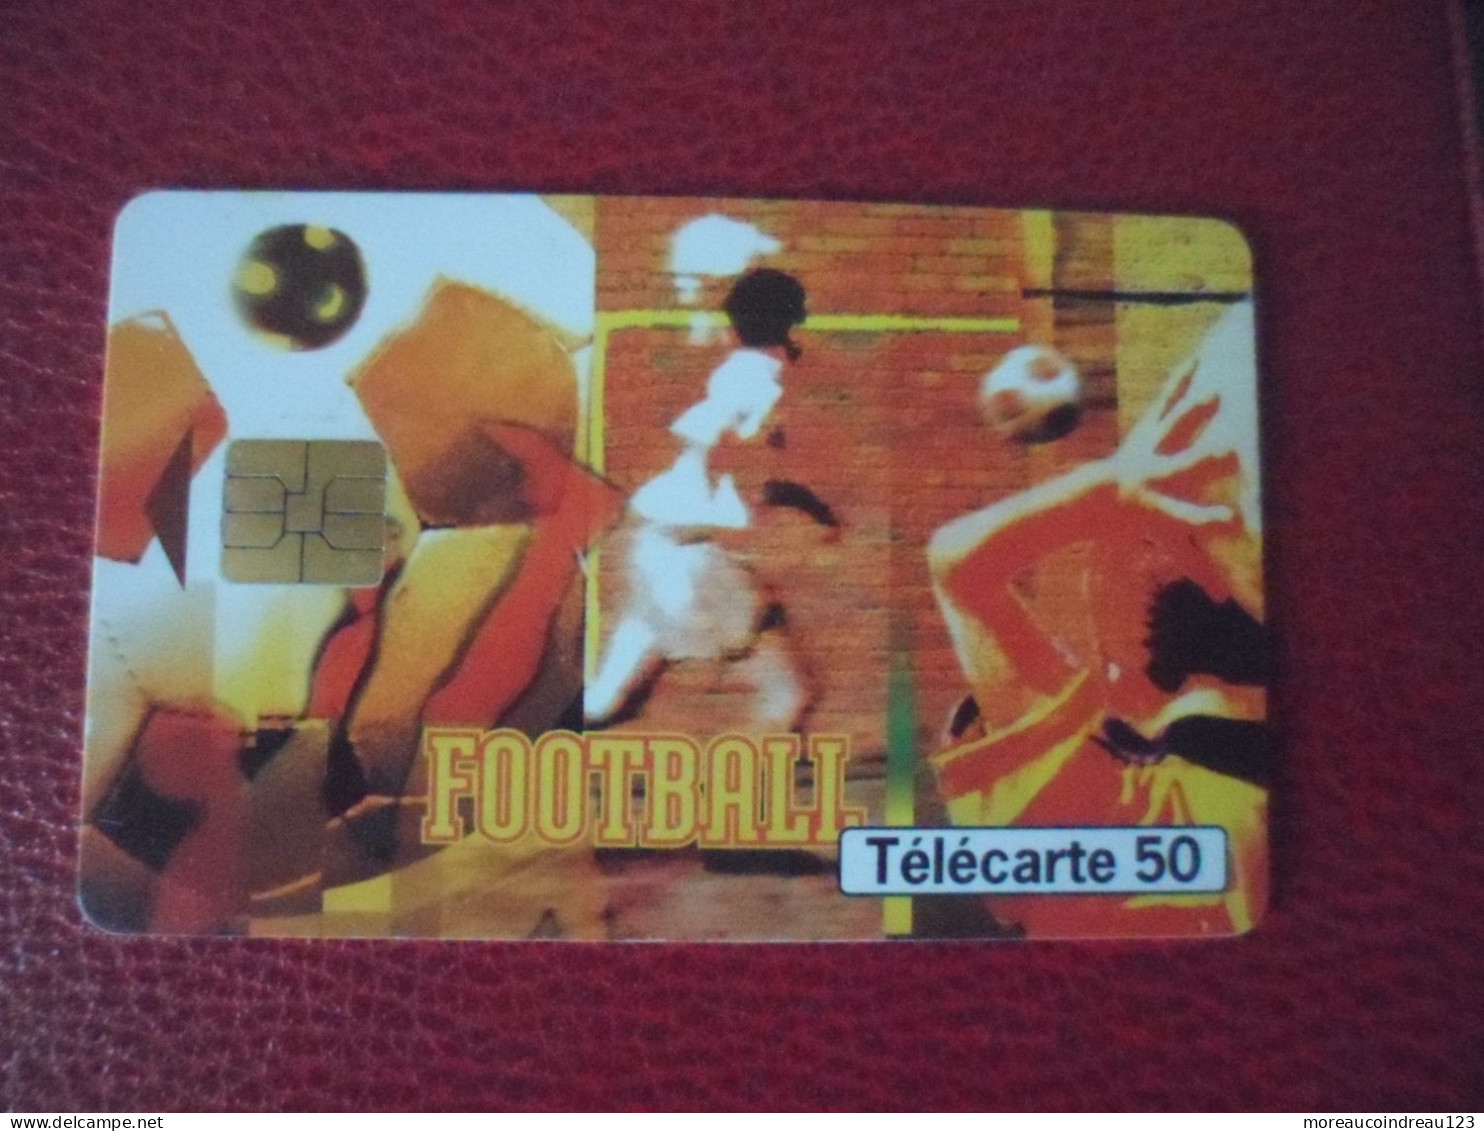 Télécarte France Télécom Street Culture 6 Football - Telekom-Betreiber